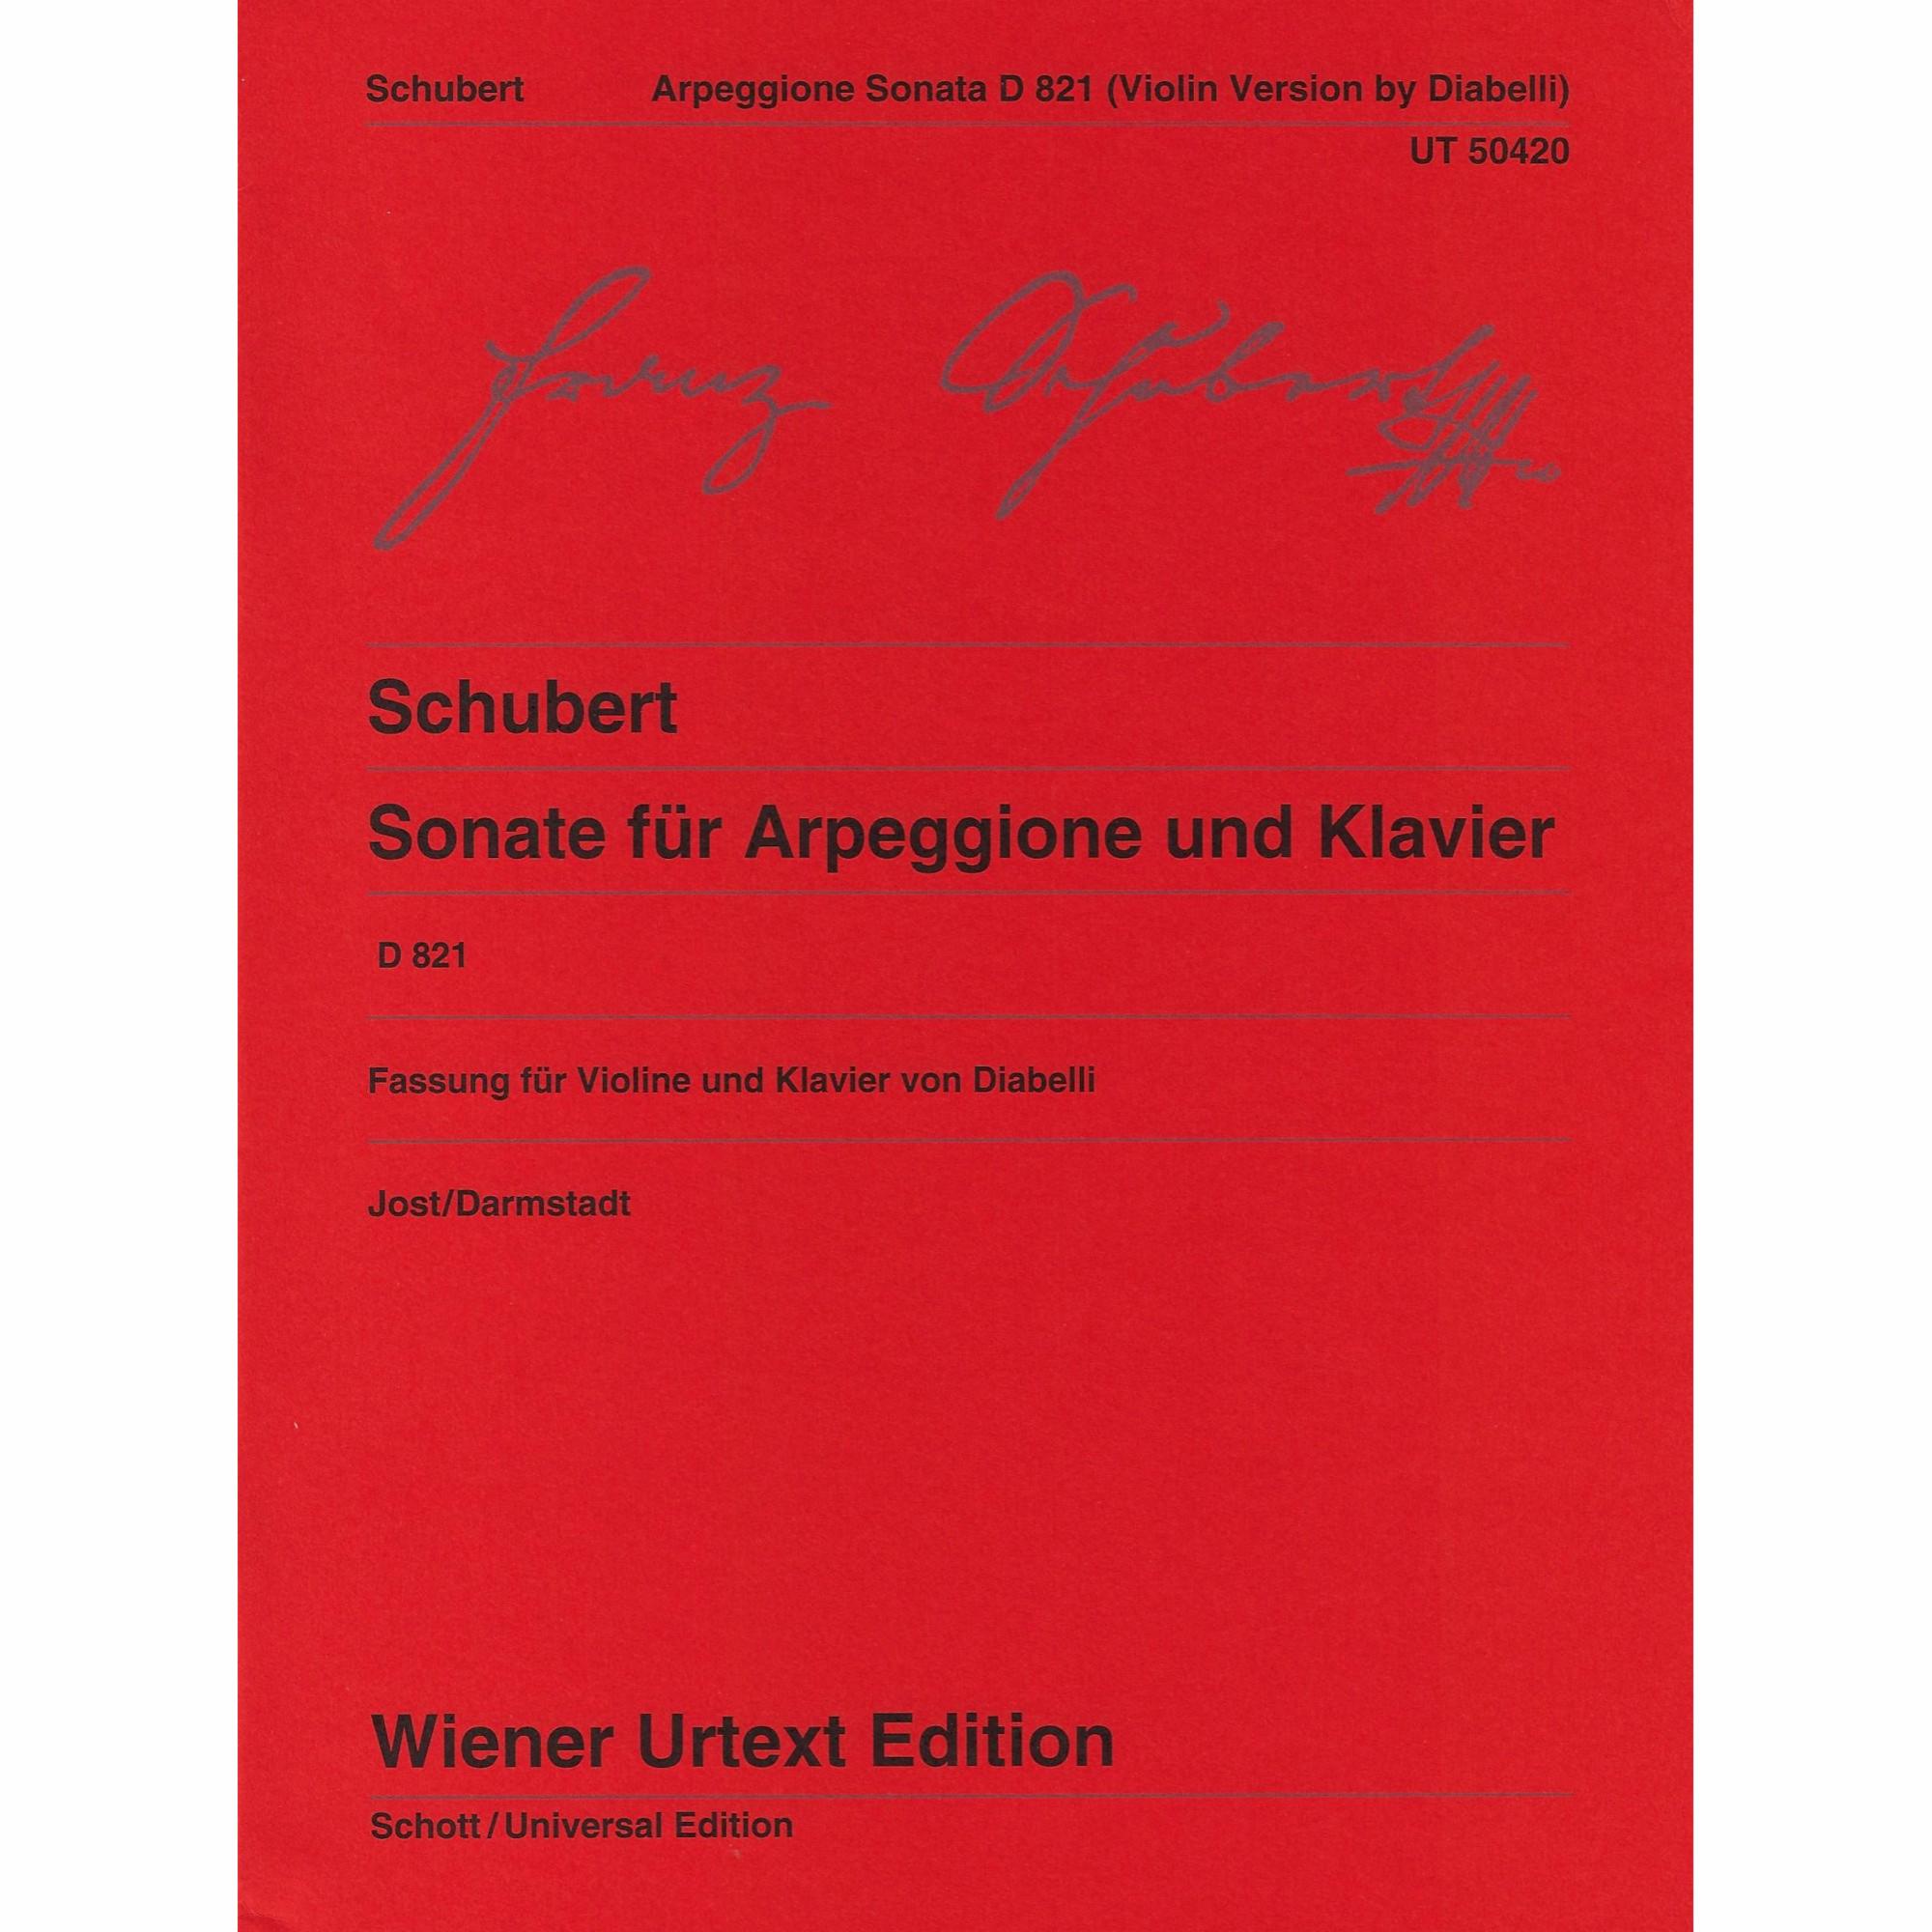 Arpeggione Sonata, D. 821 for Violin and Piano